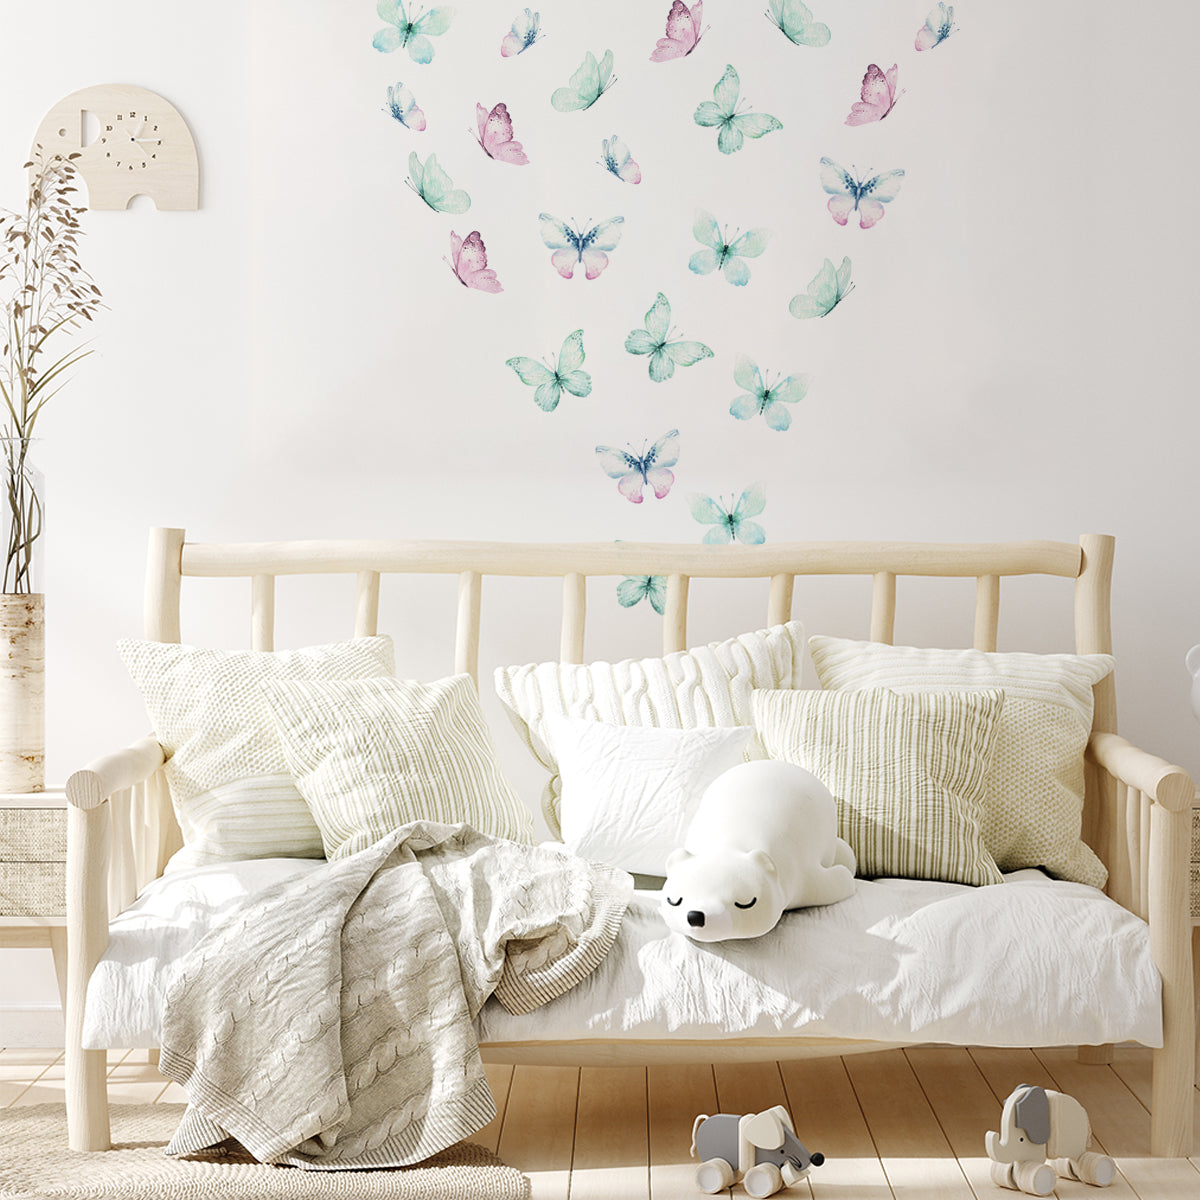 Kinder-Zimmer Aufkleber Sticker Biene Marienkäfer Schmetterling Grashüpfer  Kind Baby Wand Deko Folie – Medianlux-Shop